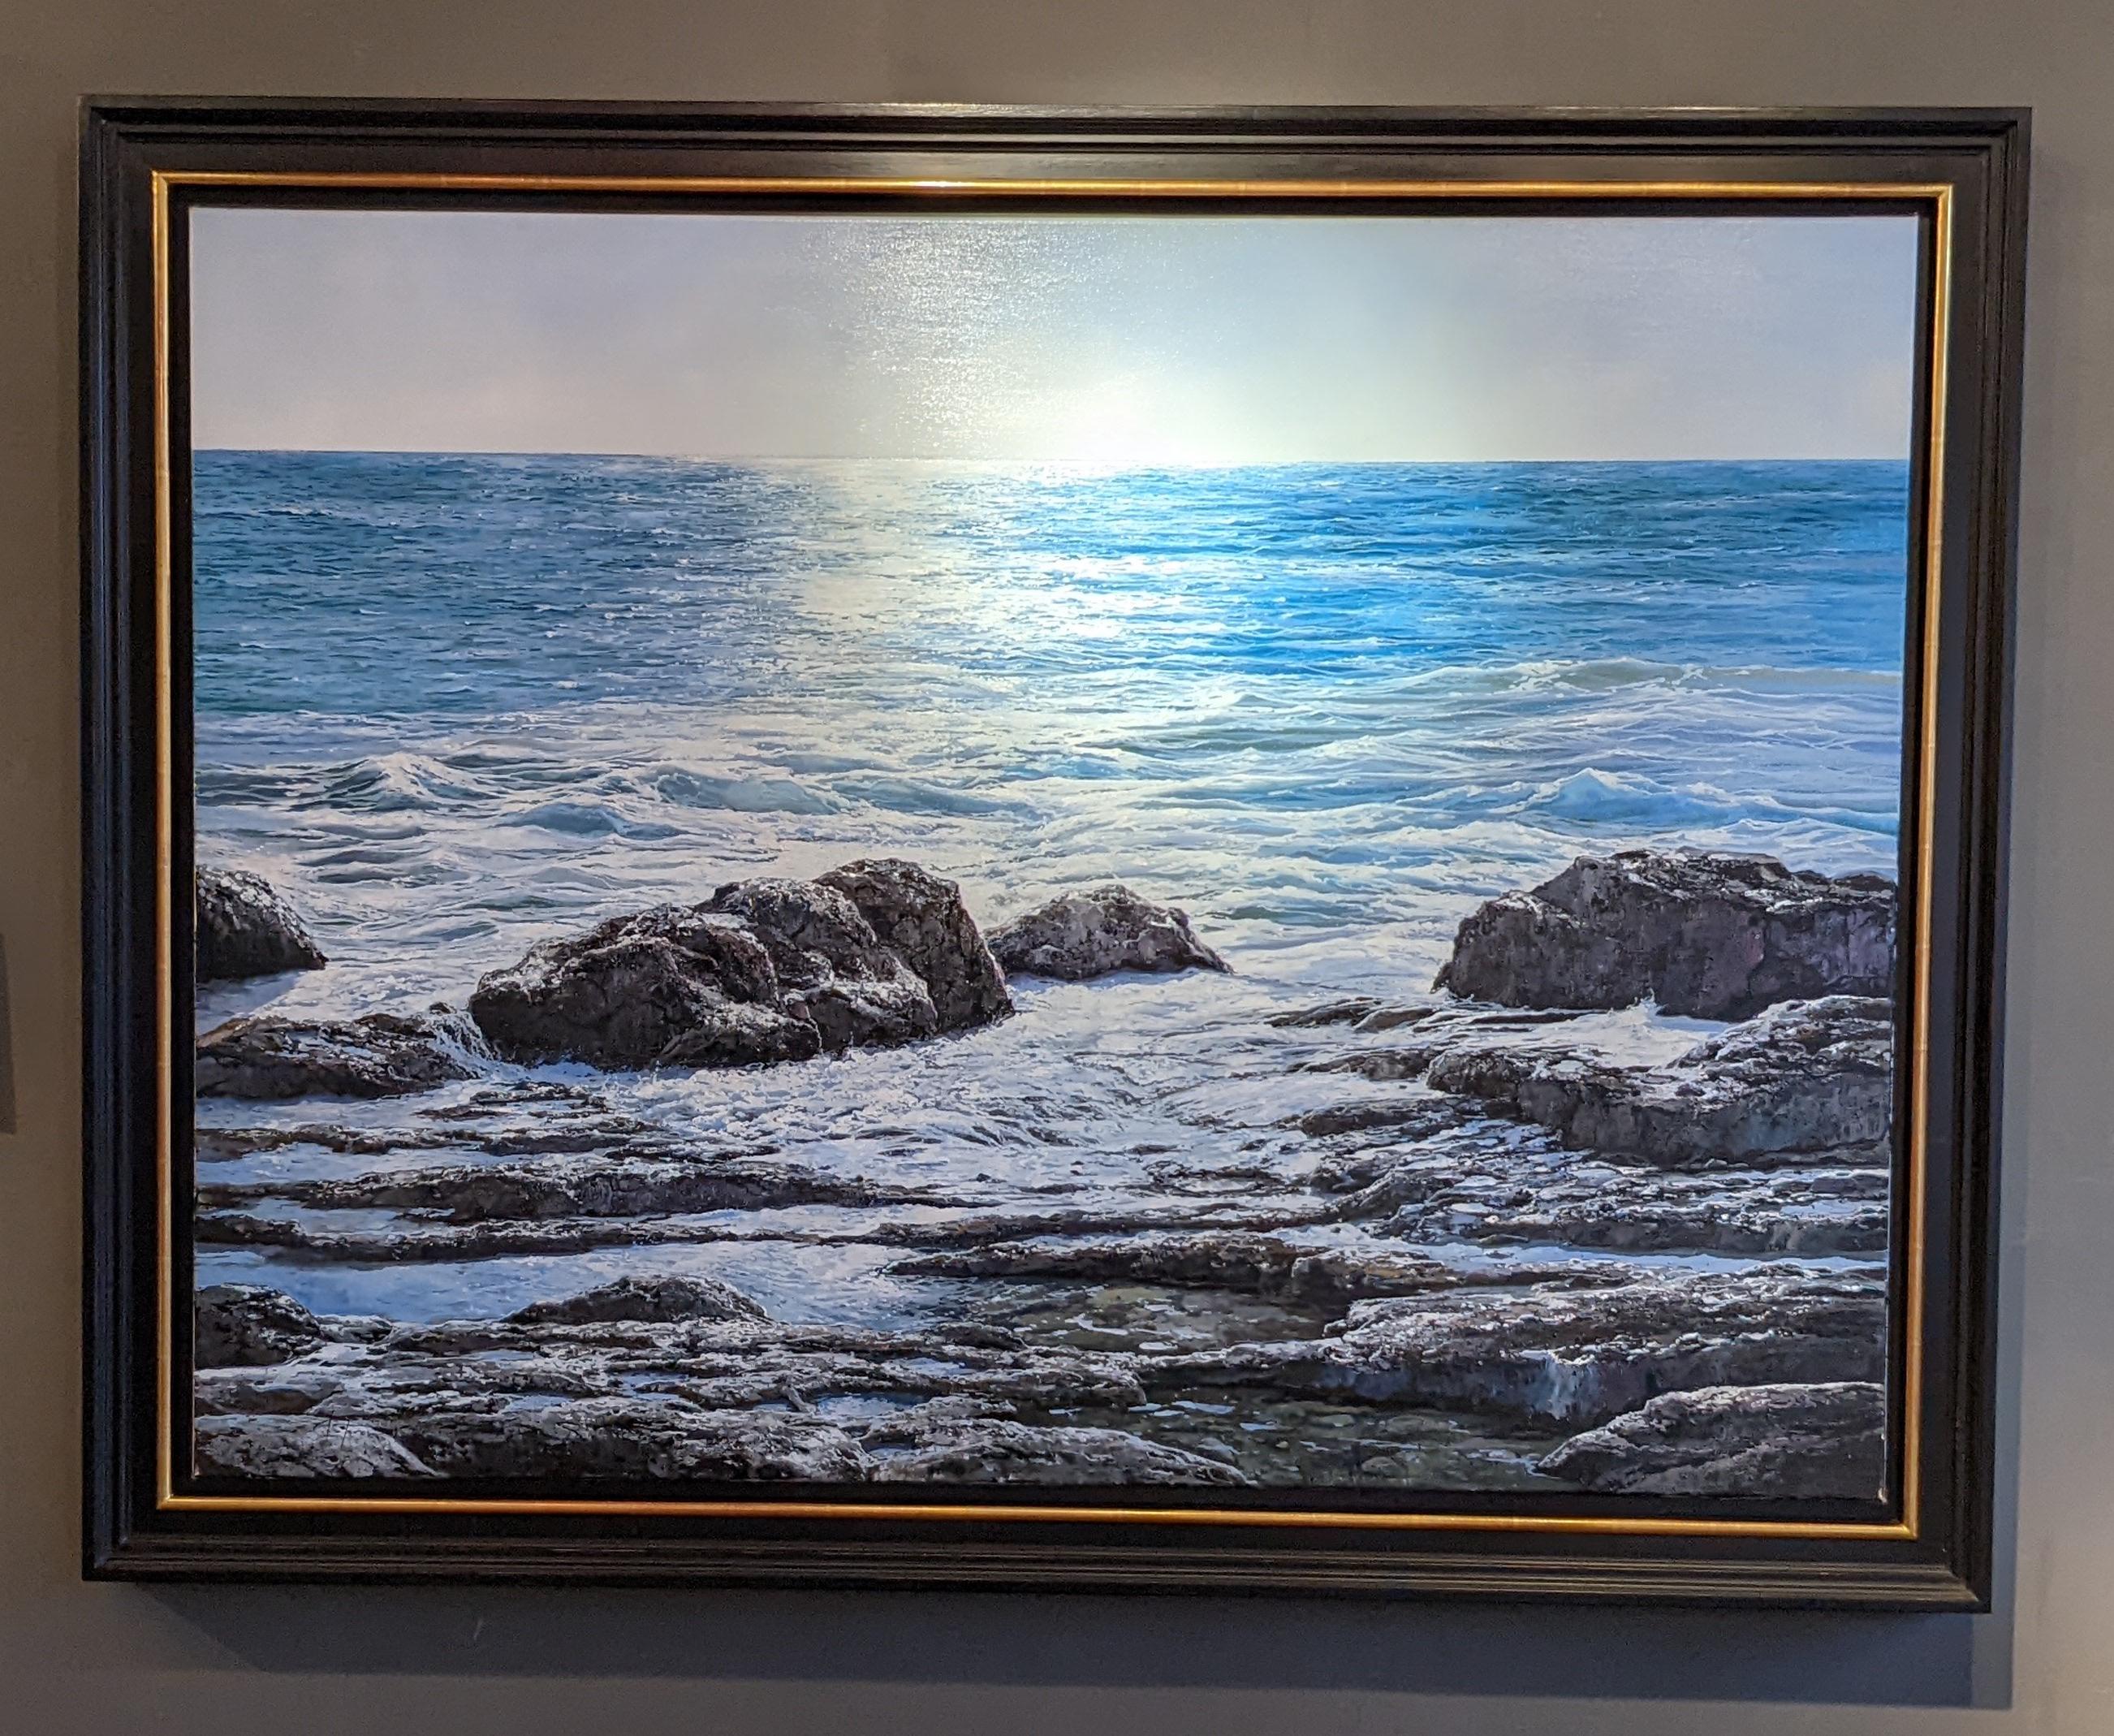 Marc Esteve Landscape Painting - 'Blue Vista' Contemporary Seascape painting of rocks, blue skies, sunlit water